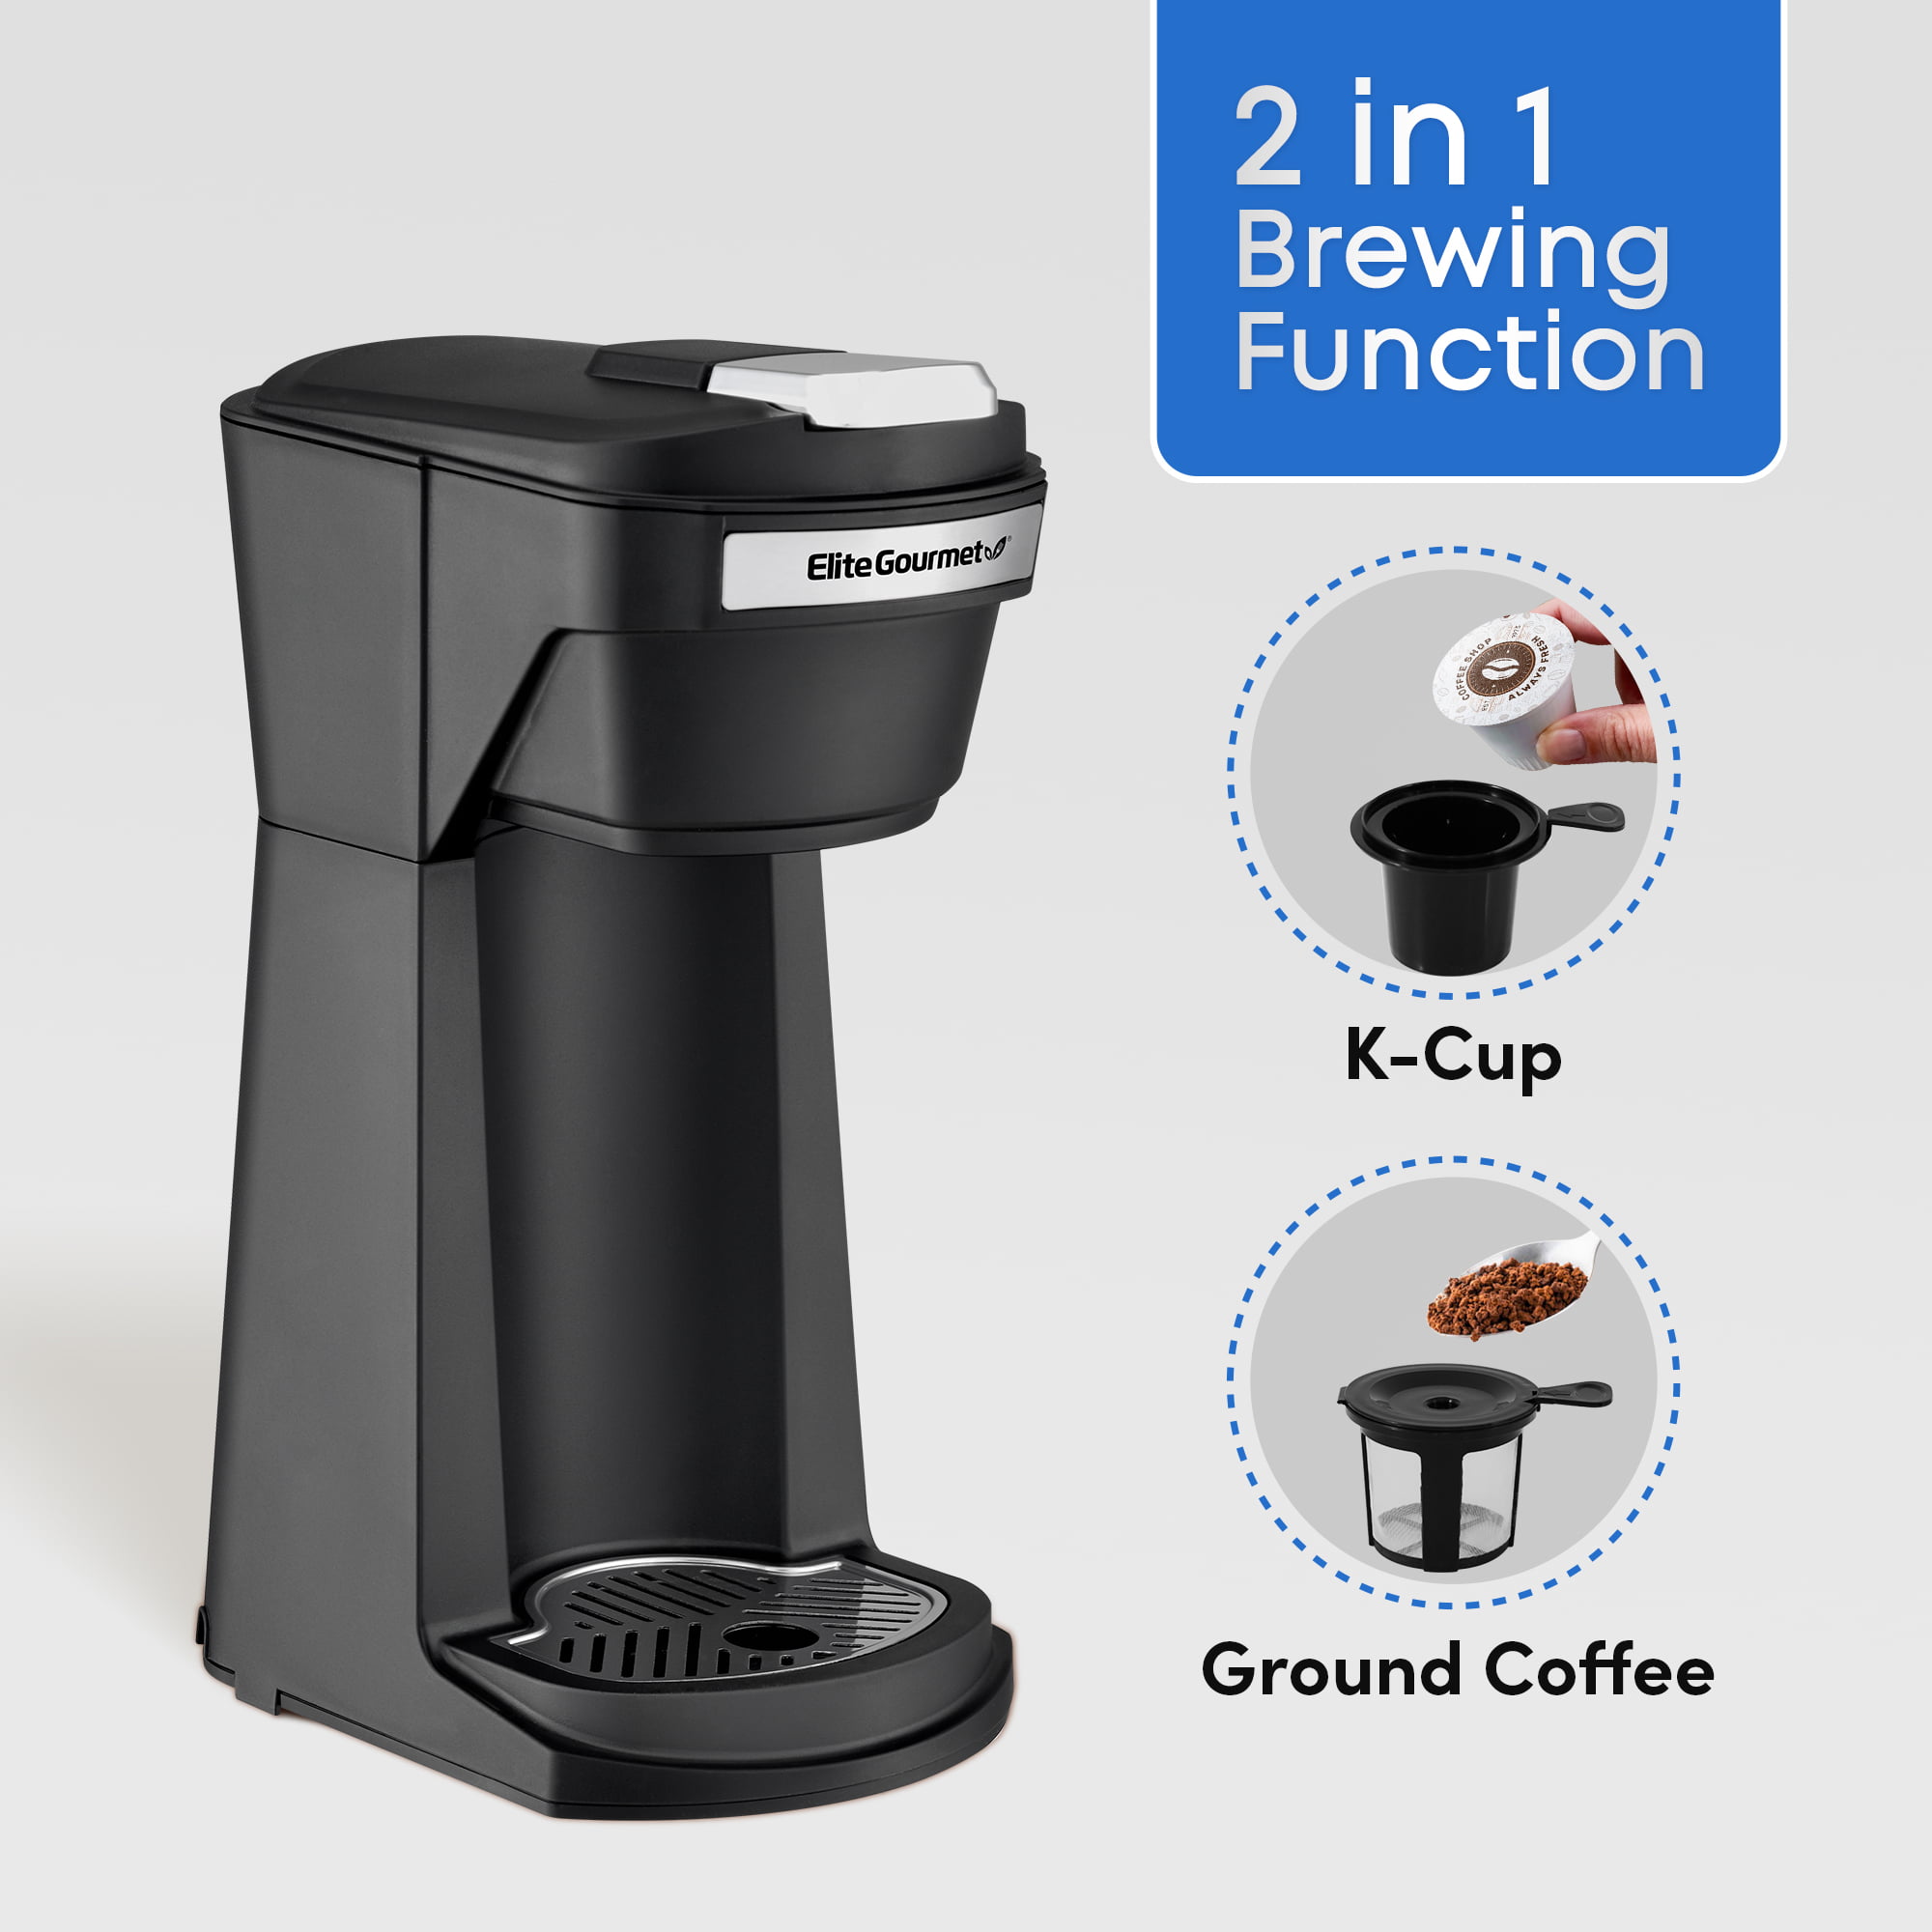 Elite Gourmet Single Serving Personal K-Cup Coffee Maker